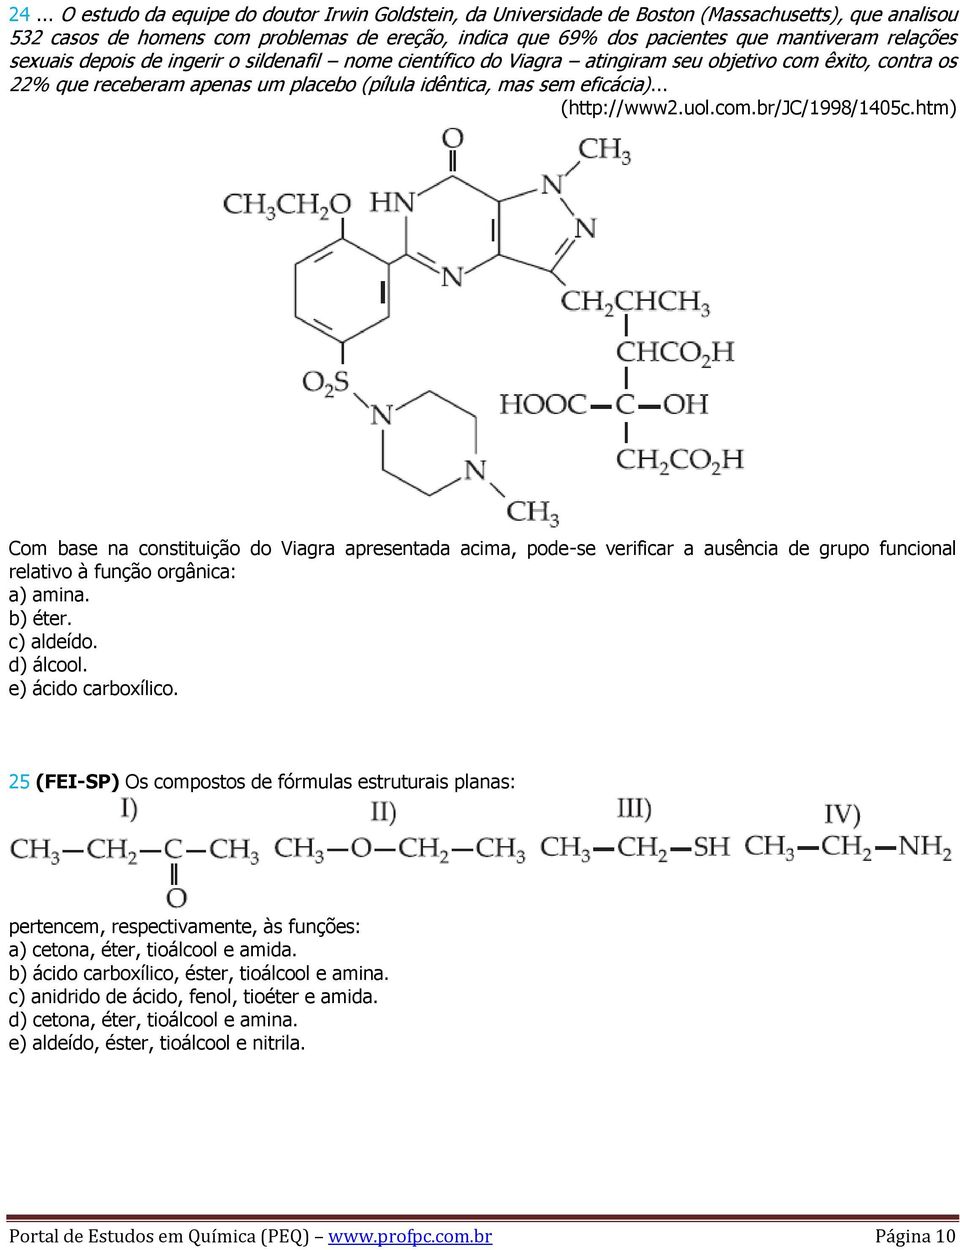 .. (http://www2.uol.com.br/jc/1998/1405c.htm) Com base na constituição do Viagra apresentada acima, pode-se verificar a ausência de grupo funcional relativo à função orgânica: a) amina. b) éter.